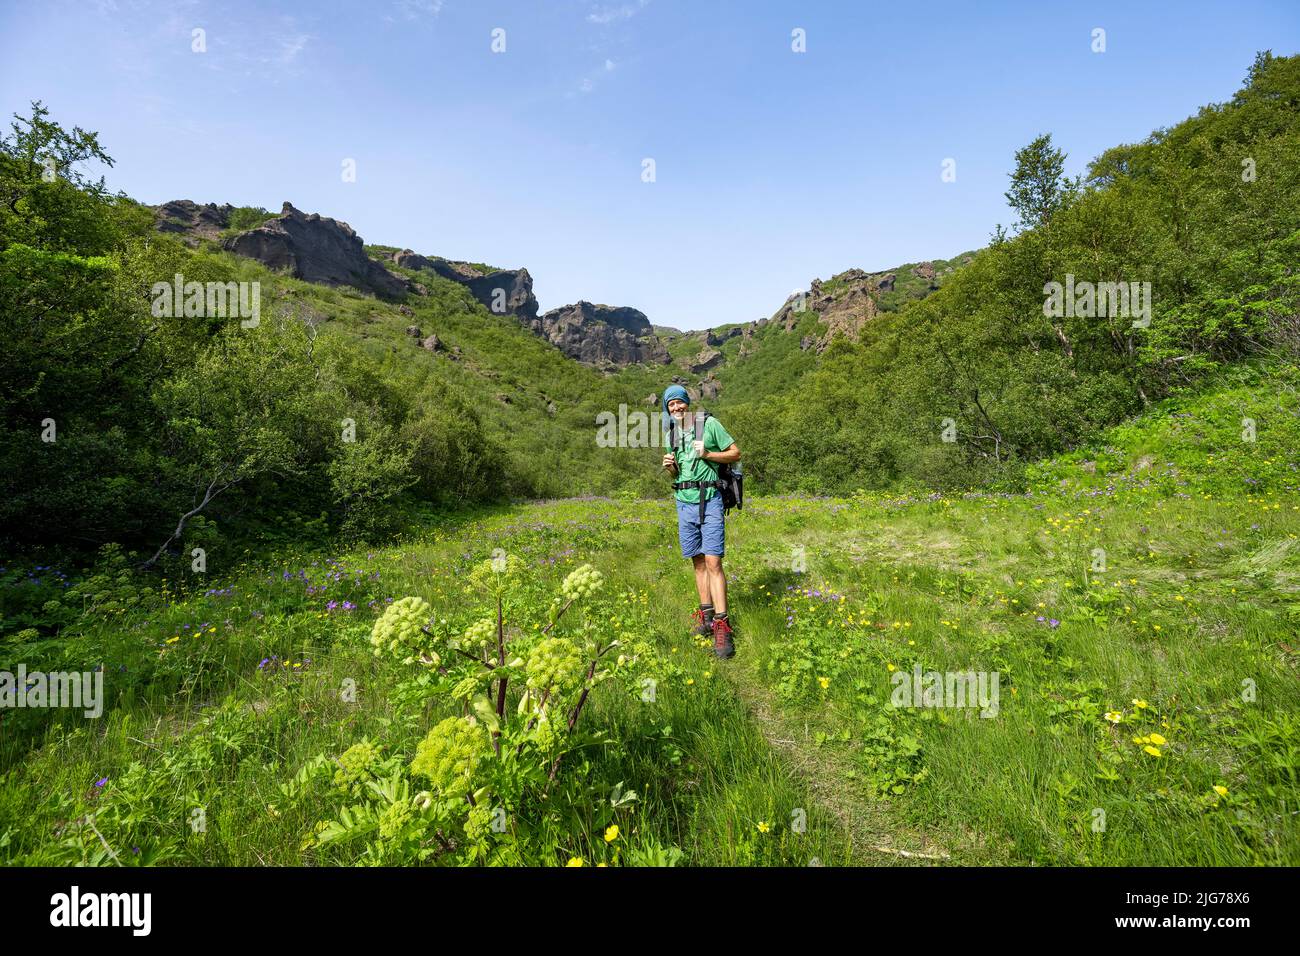 Sentier de randonnée pédestre sur le sentier à travers la prairie de fleurs, sur la crête de Tindfjoell, nature sauvage, les montagnes islandaises, Porsmoerk, Suourland, Islande Banque D'Images